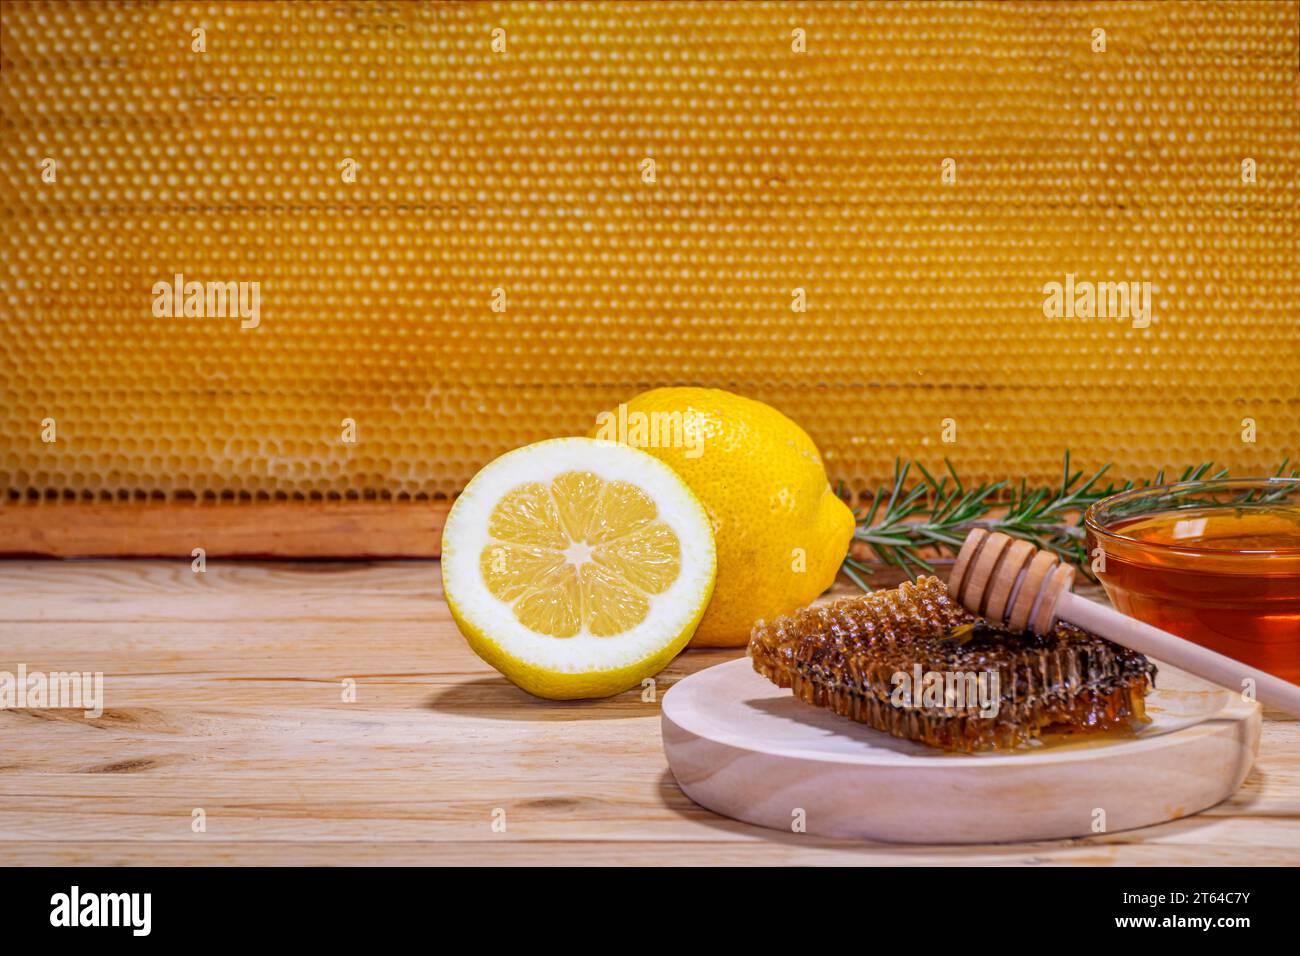 Pezzo di favo su un piatto di legno con un rametto di rosmarino, una ciotola con miele, un limone e mezzo e un favo sullo sfondo. Spazio per il testo Foto Stock